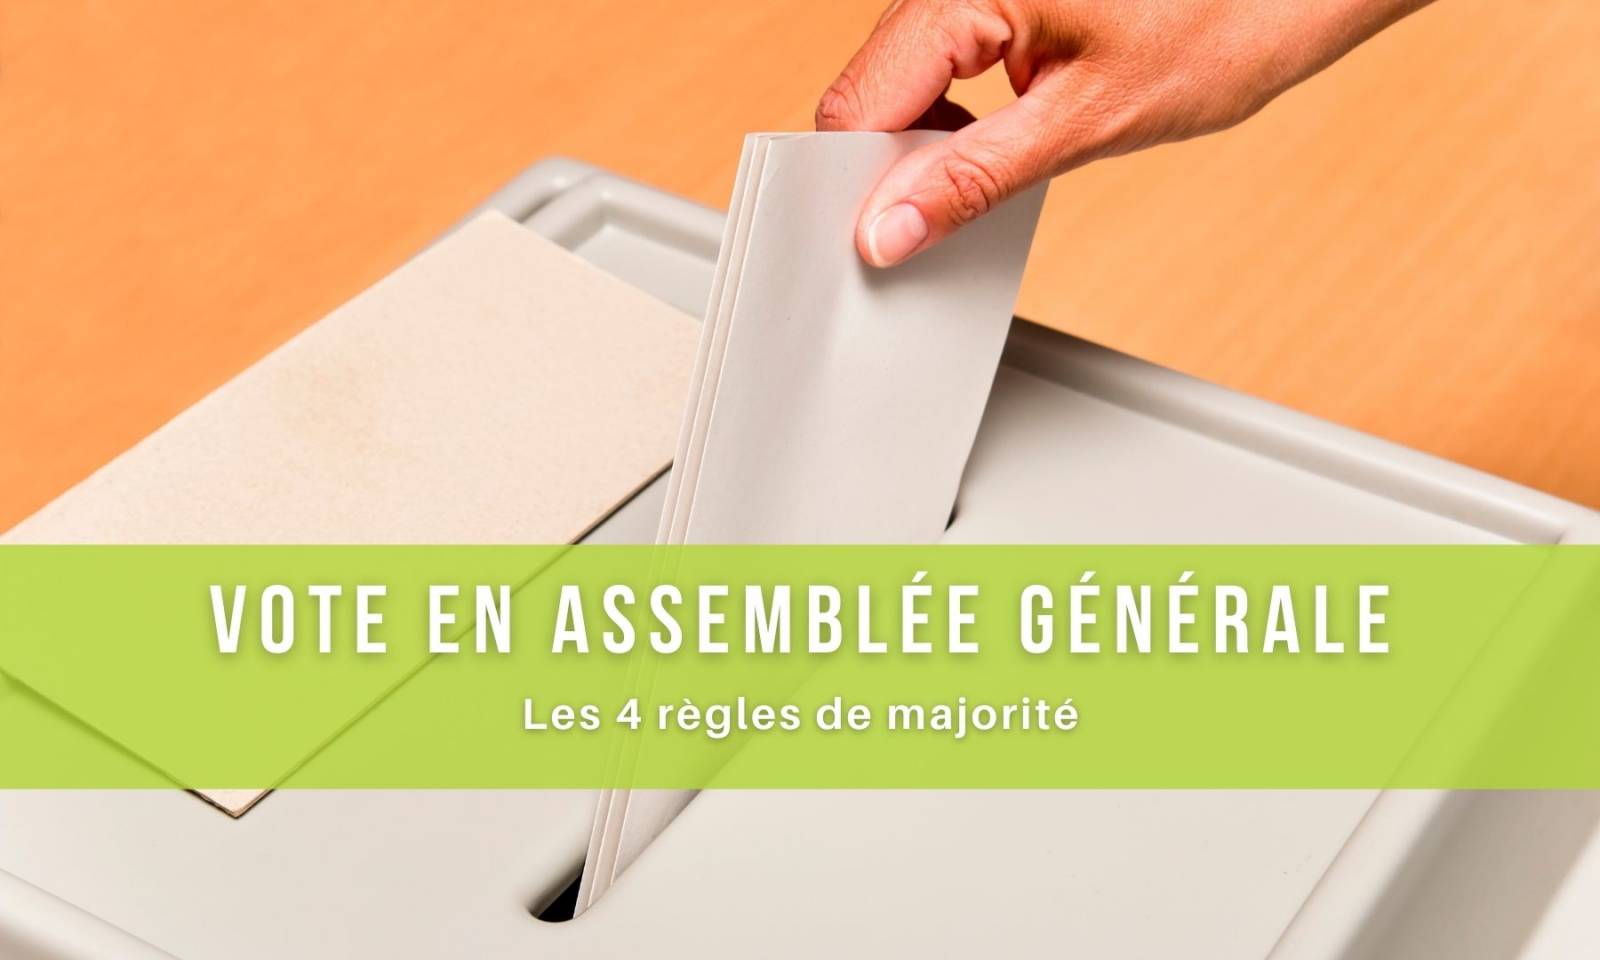 Les 4 règles de majorité lors d’un vote en Assemblée générale